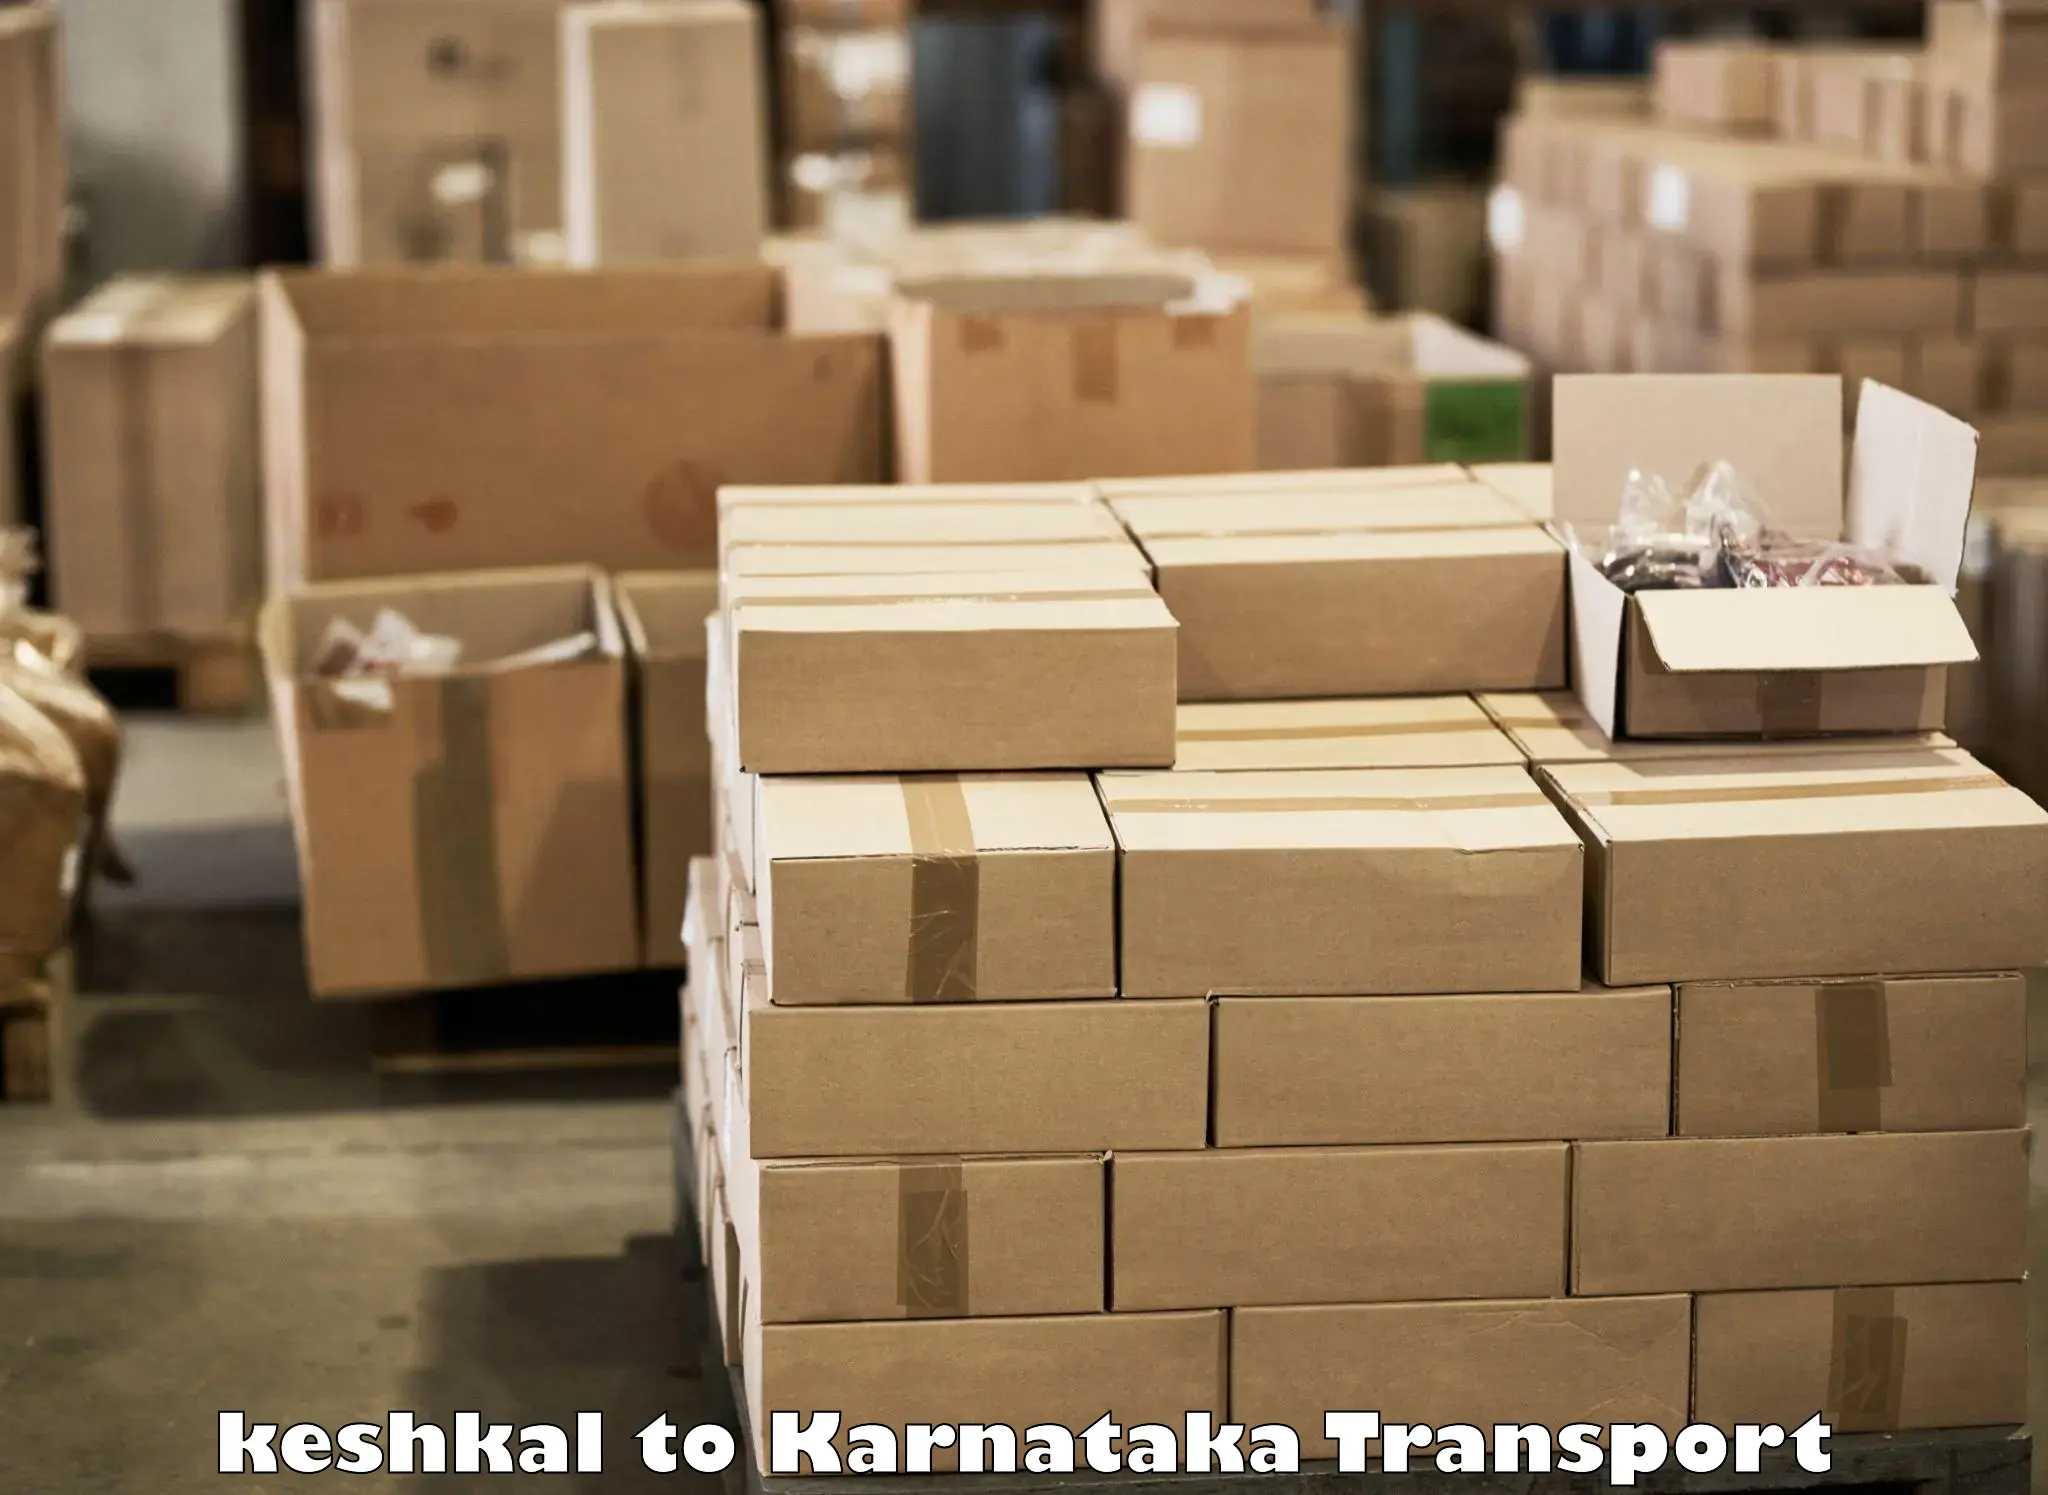 Road transport online services keshkal to Holenarasipur